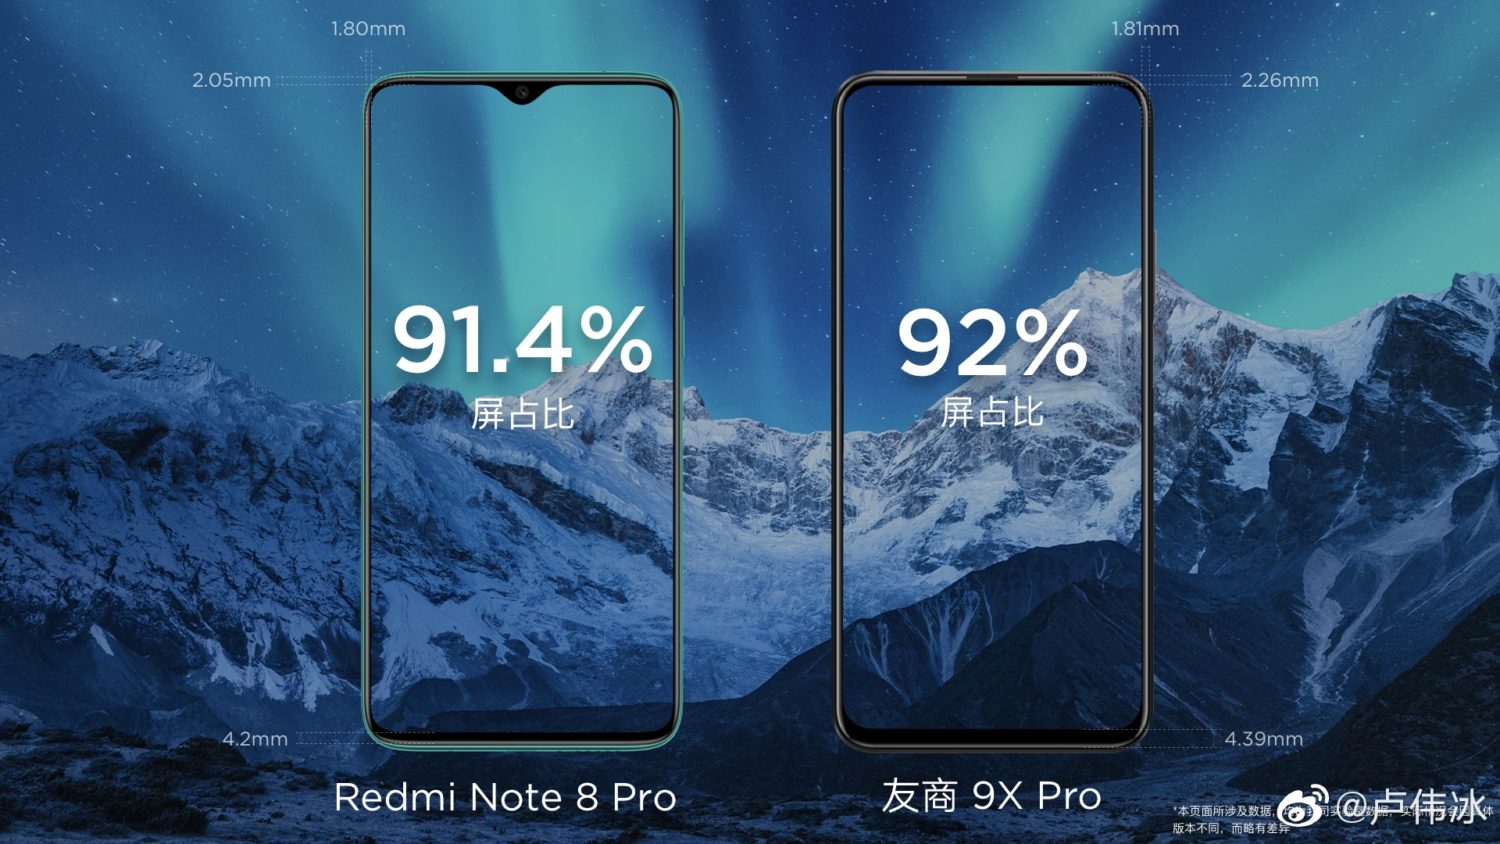 Redmi Note 8 Pro vs Honor 9X Pro Screen-To-Body Ratio